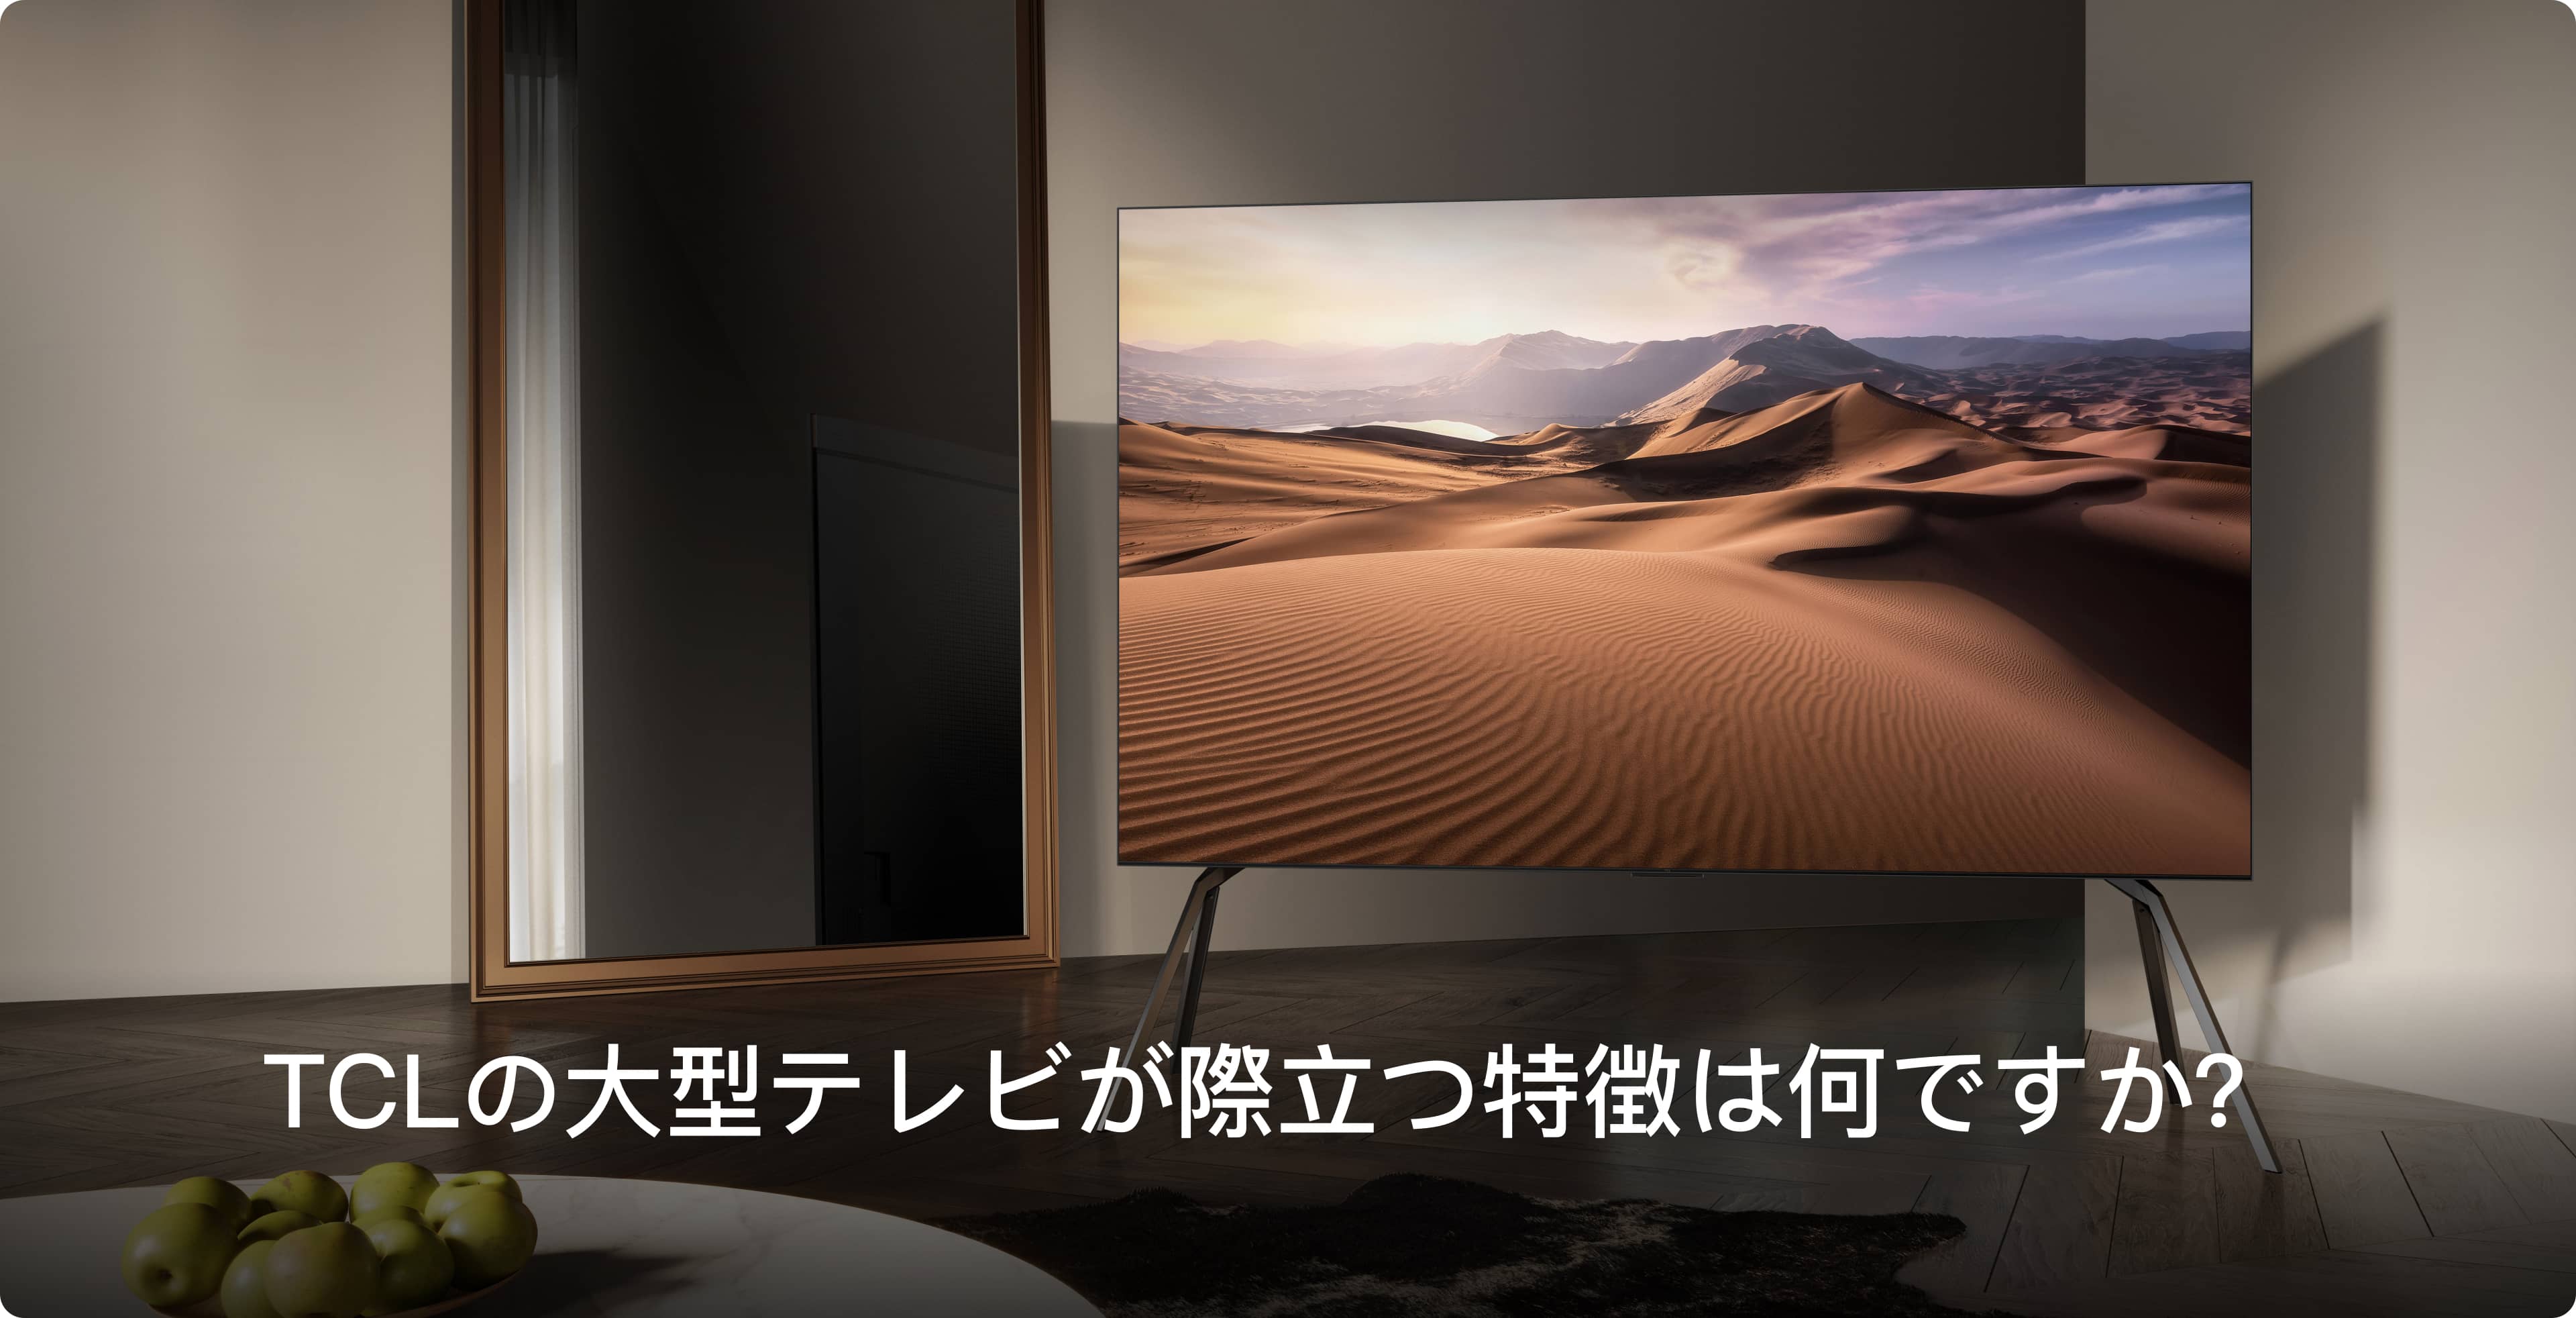 南宫ng·28 大型テレビ